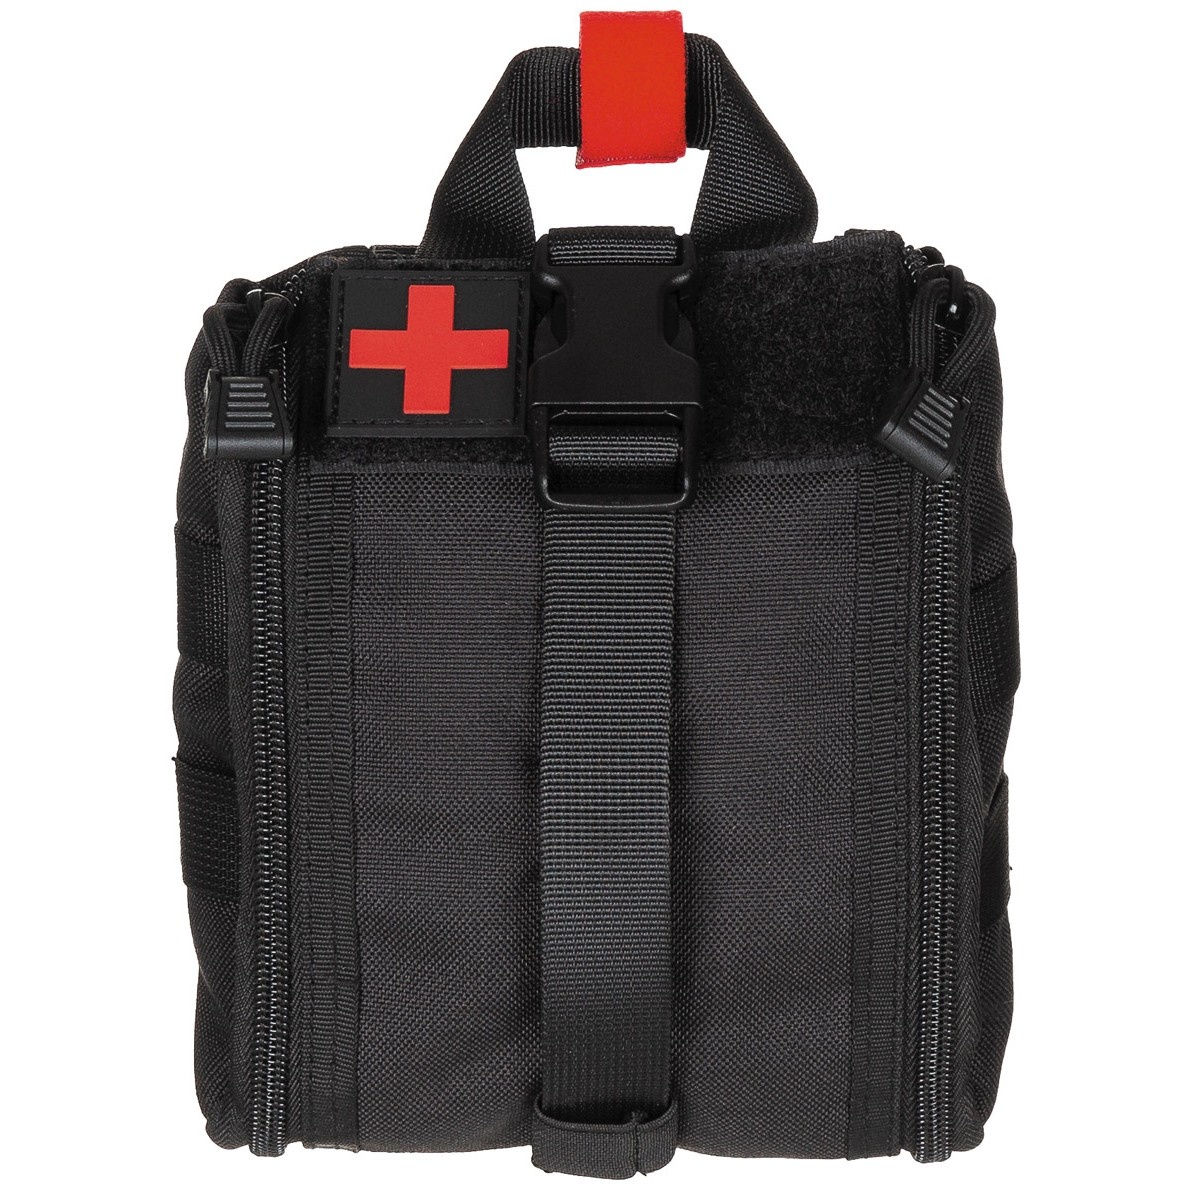 MFH MOLLE first aid bag small - BK